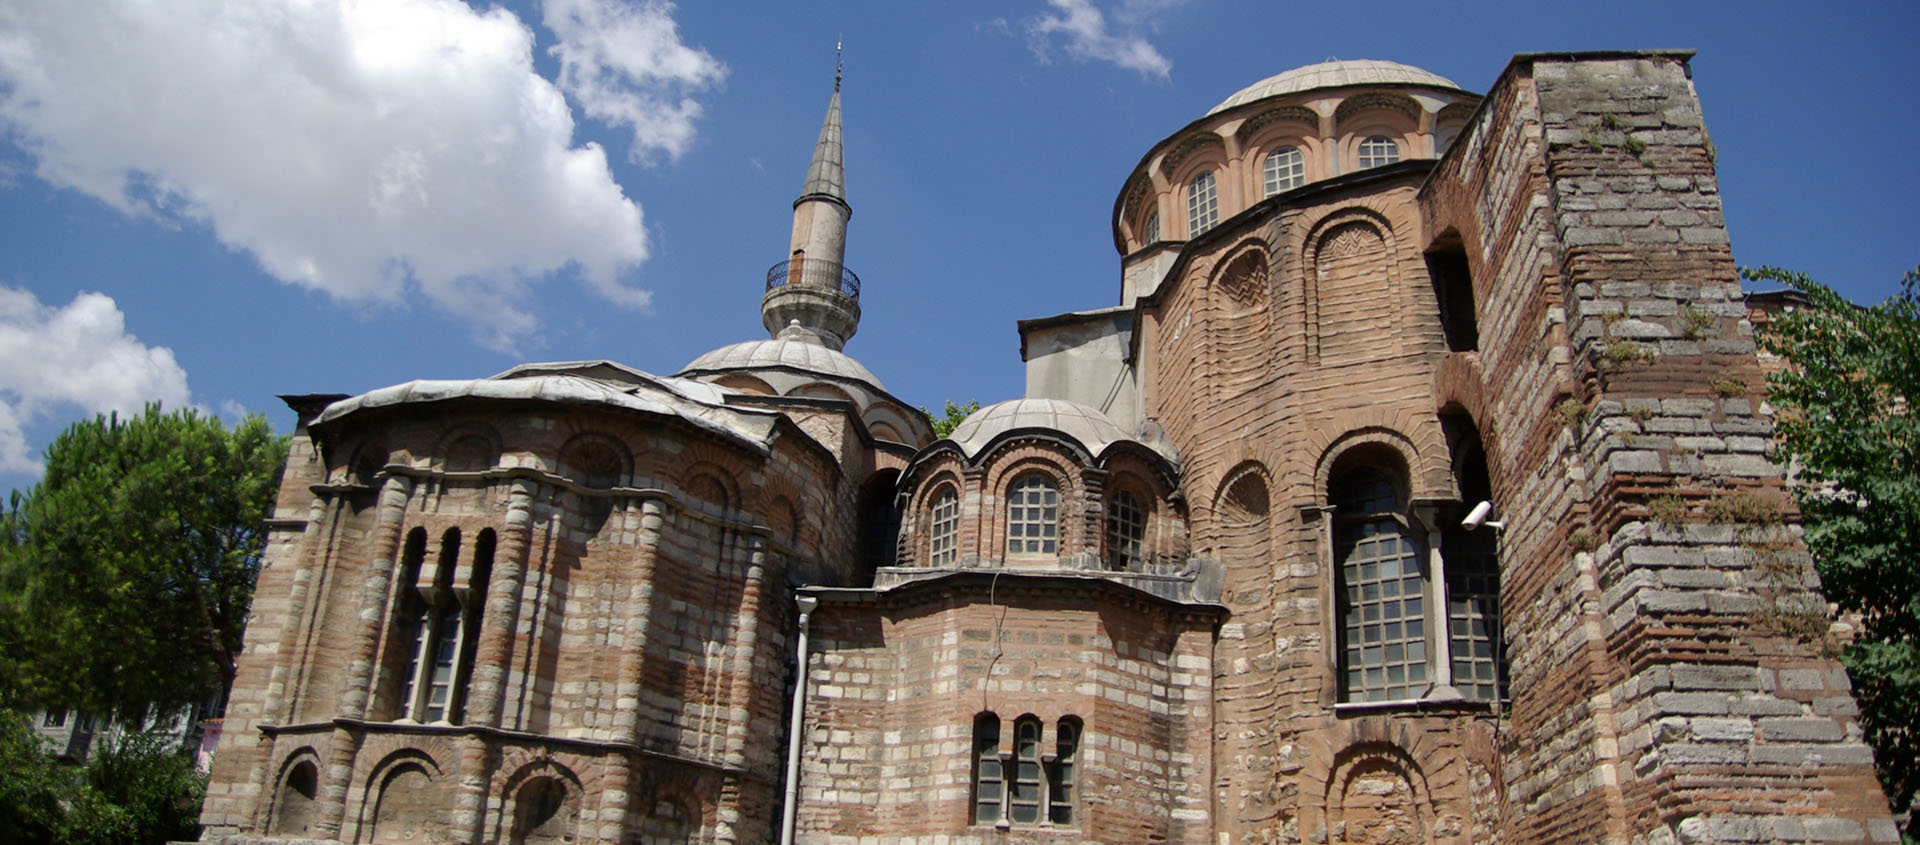 Le projet de reconvertir Saint-Sauveur-in-Chora en mosquée était passée inaperçu, sauf en Russie et en Grèce | © Wikimedia Commons/Mkiman